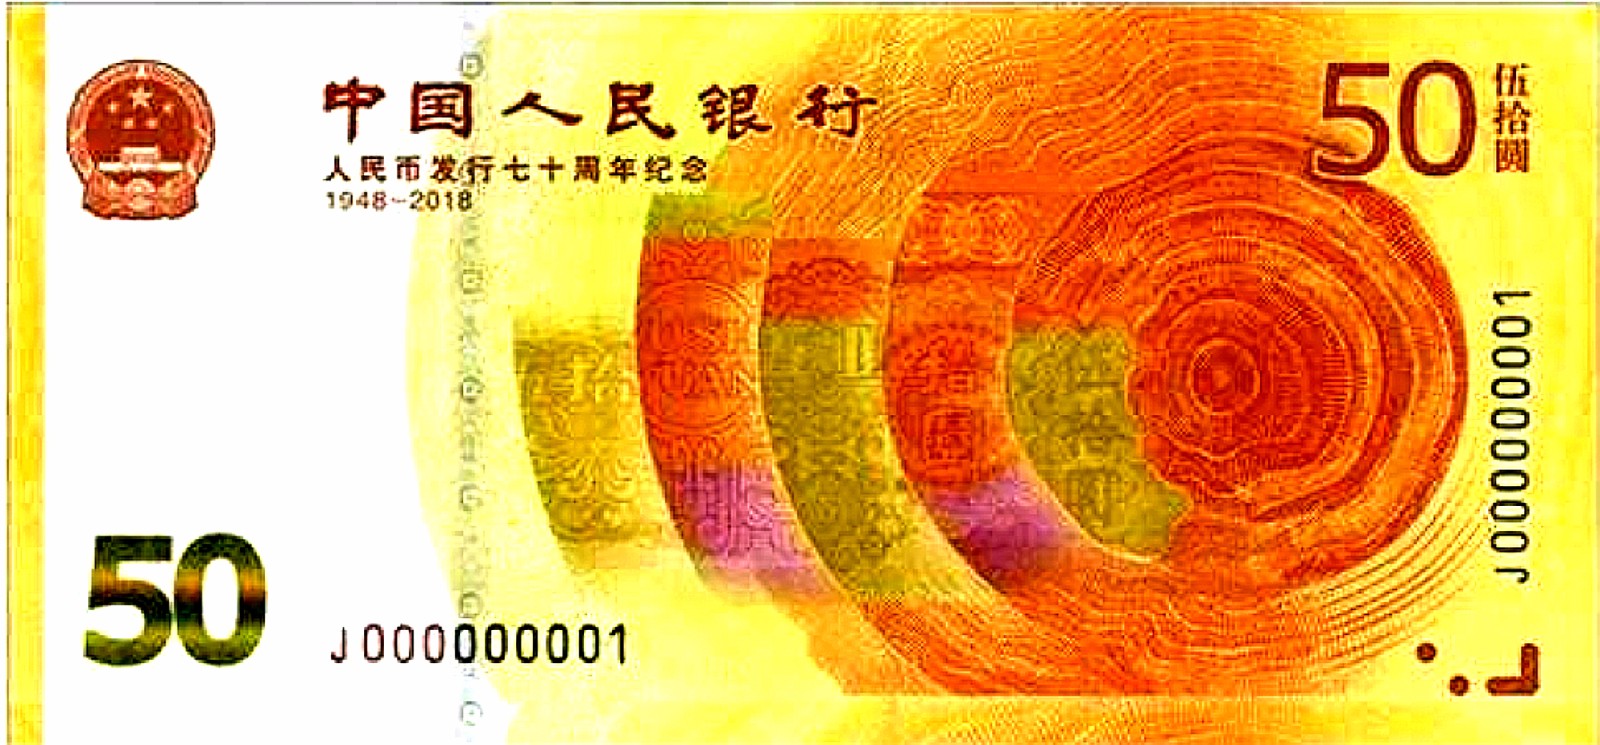 涨?人民币发行70周年纪念钞预约火爆